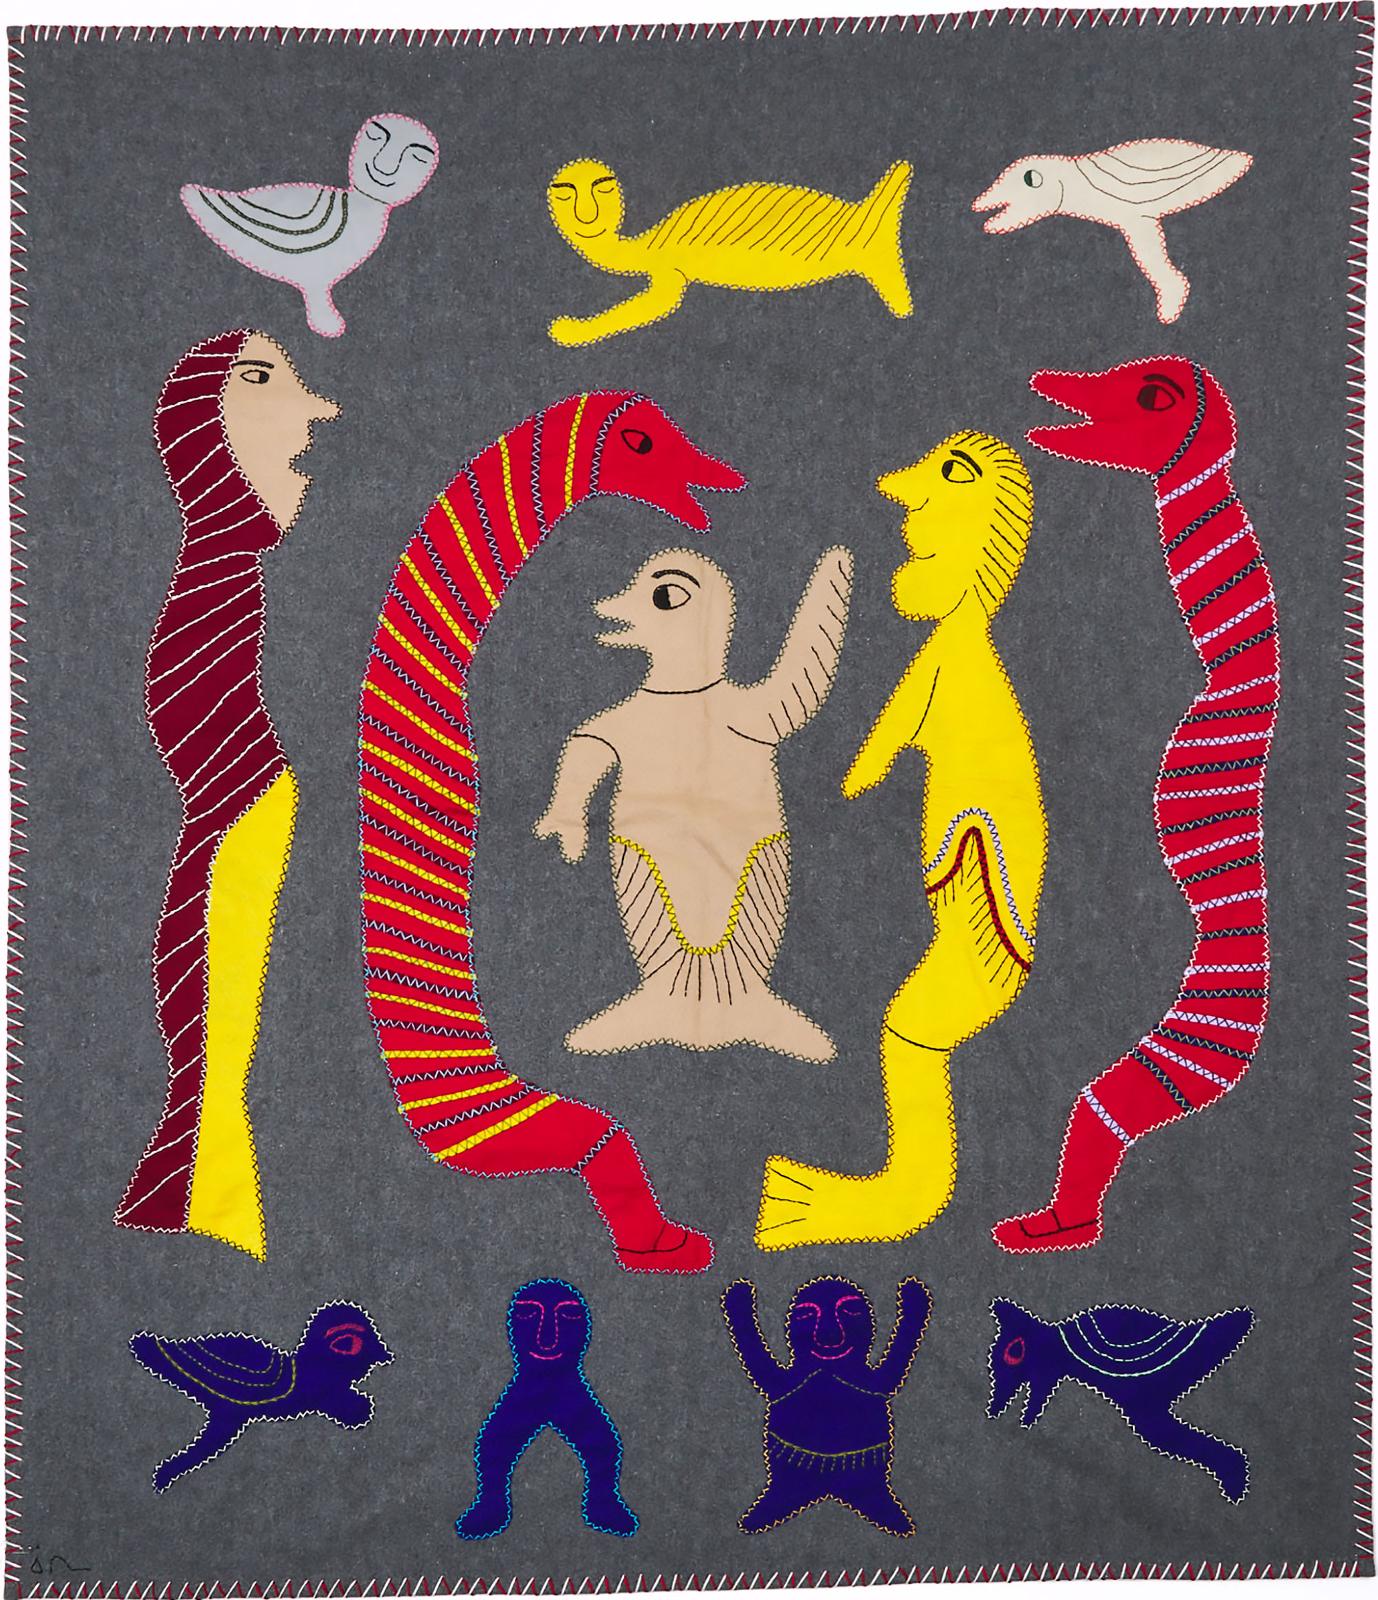 Irene Avaalaaquiaq Tiktaalaaq (1941) - Spirits